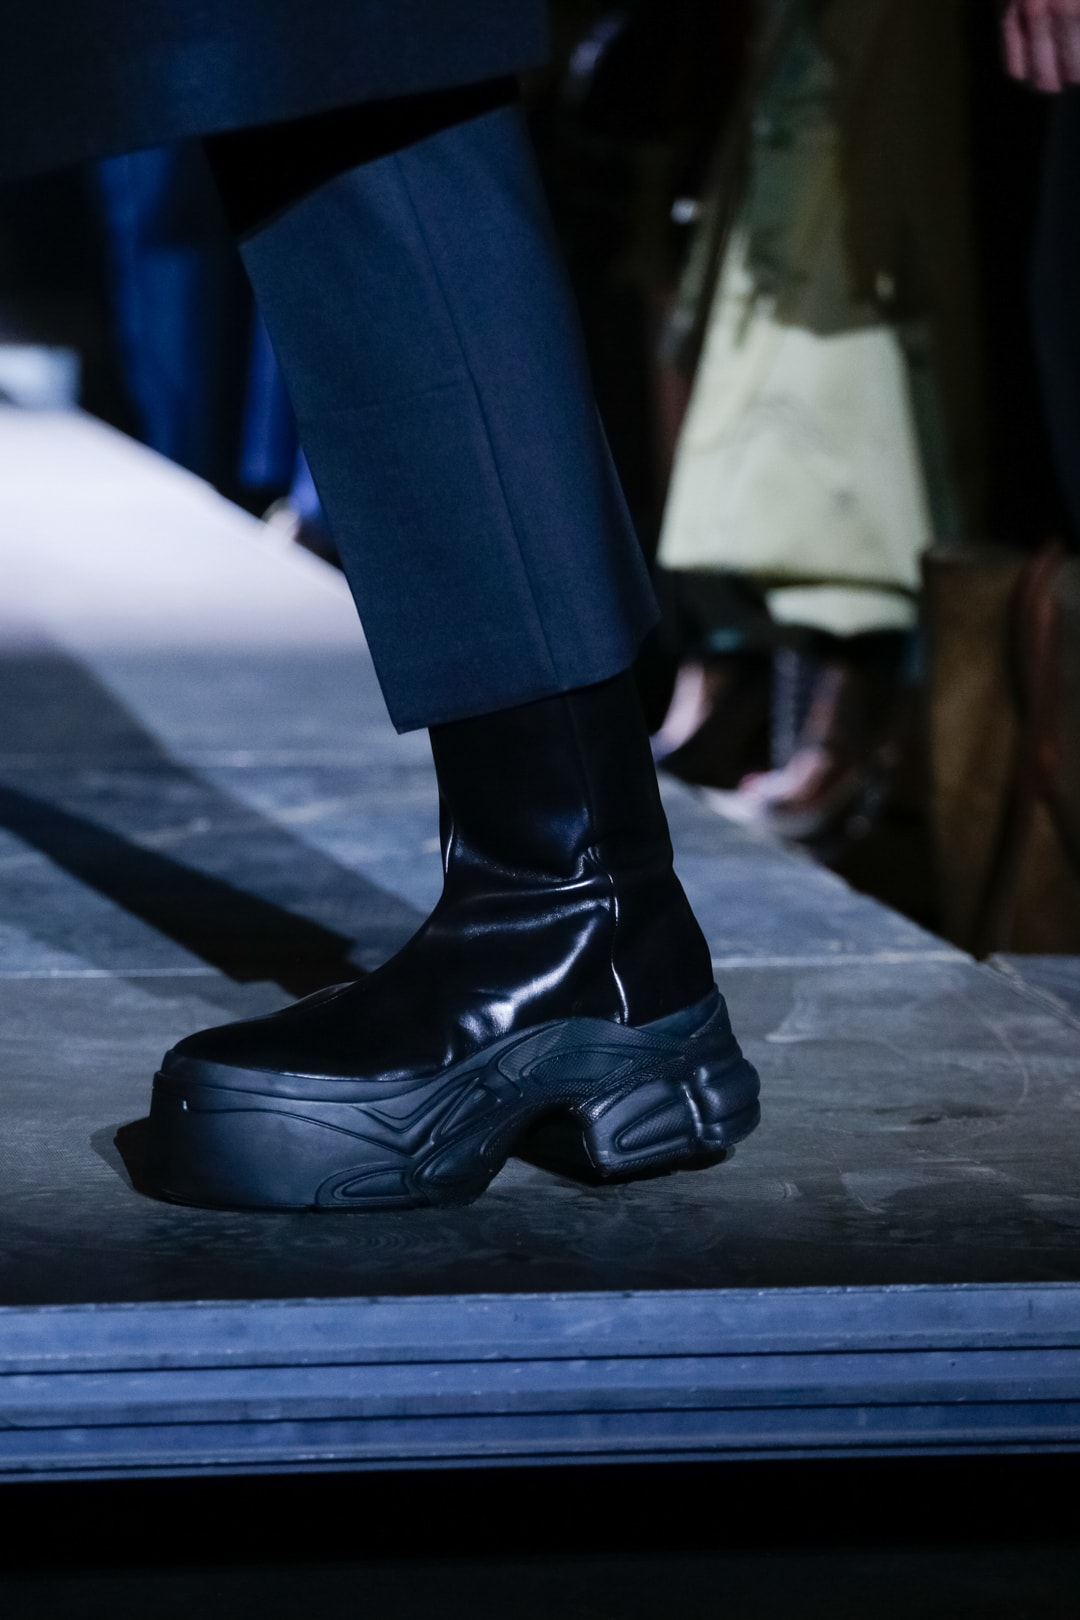 adidas by Raf Simons Spring/Summer 2019 Footwear sneakers leather platform boot Ozweego Detroit Runner paris fashion week runway